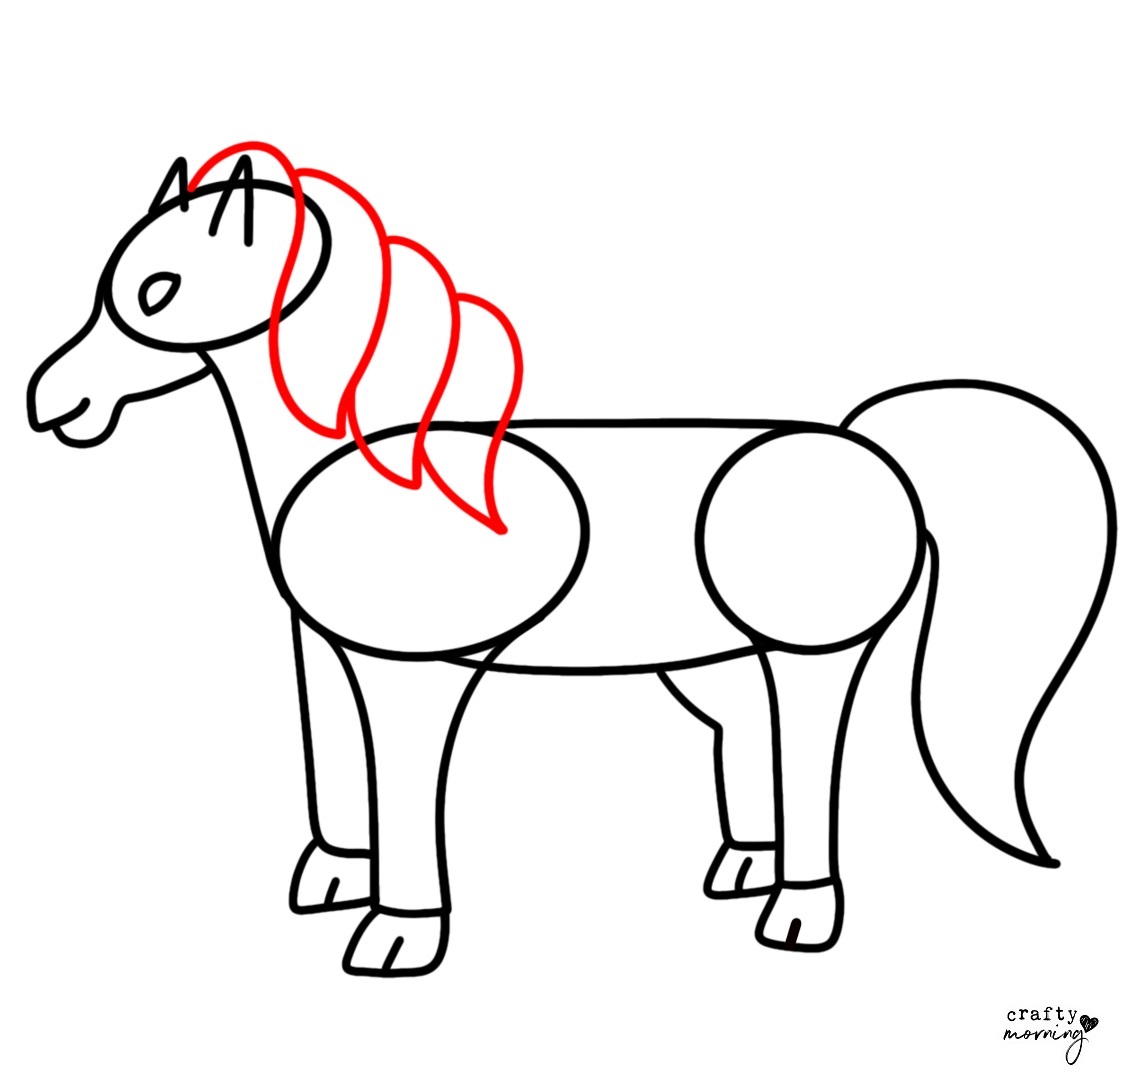 Cute horse draw Royalty Free Vector Image - VectorStock